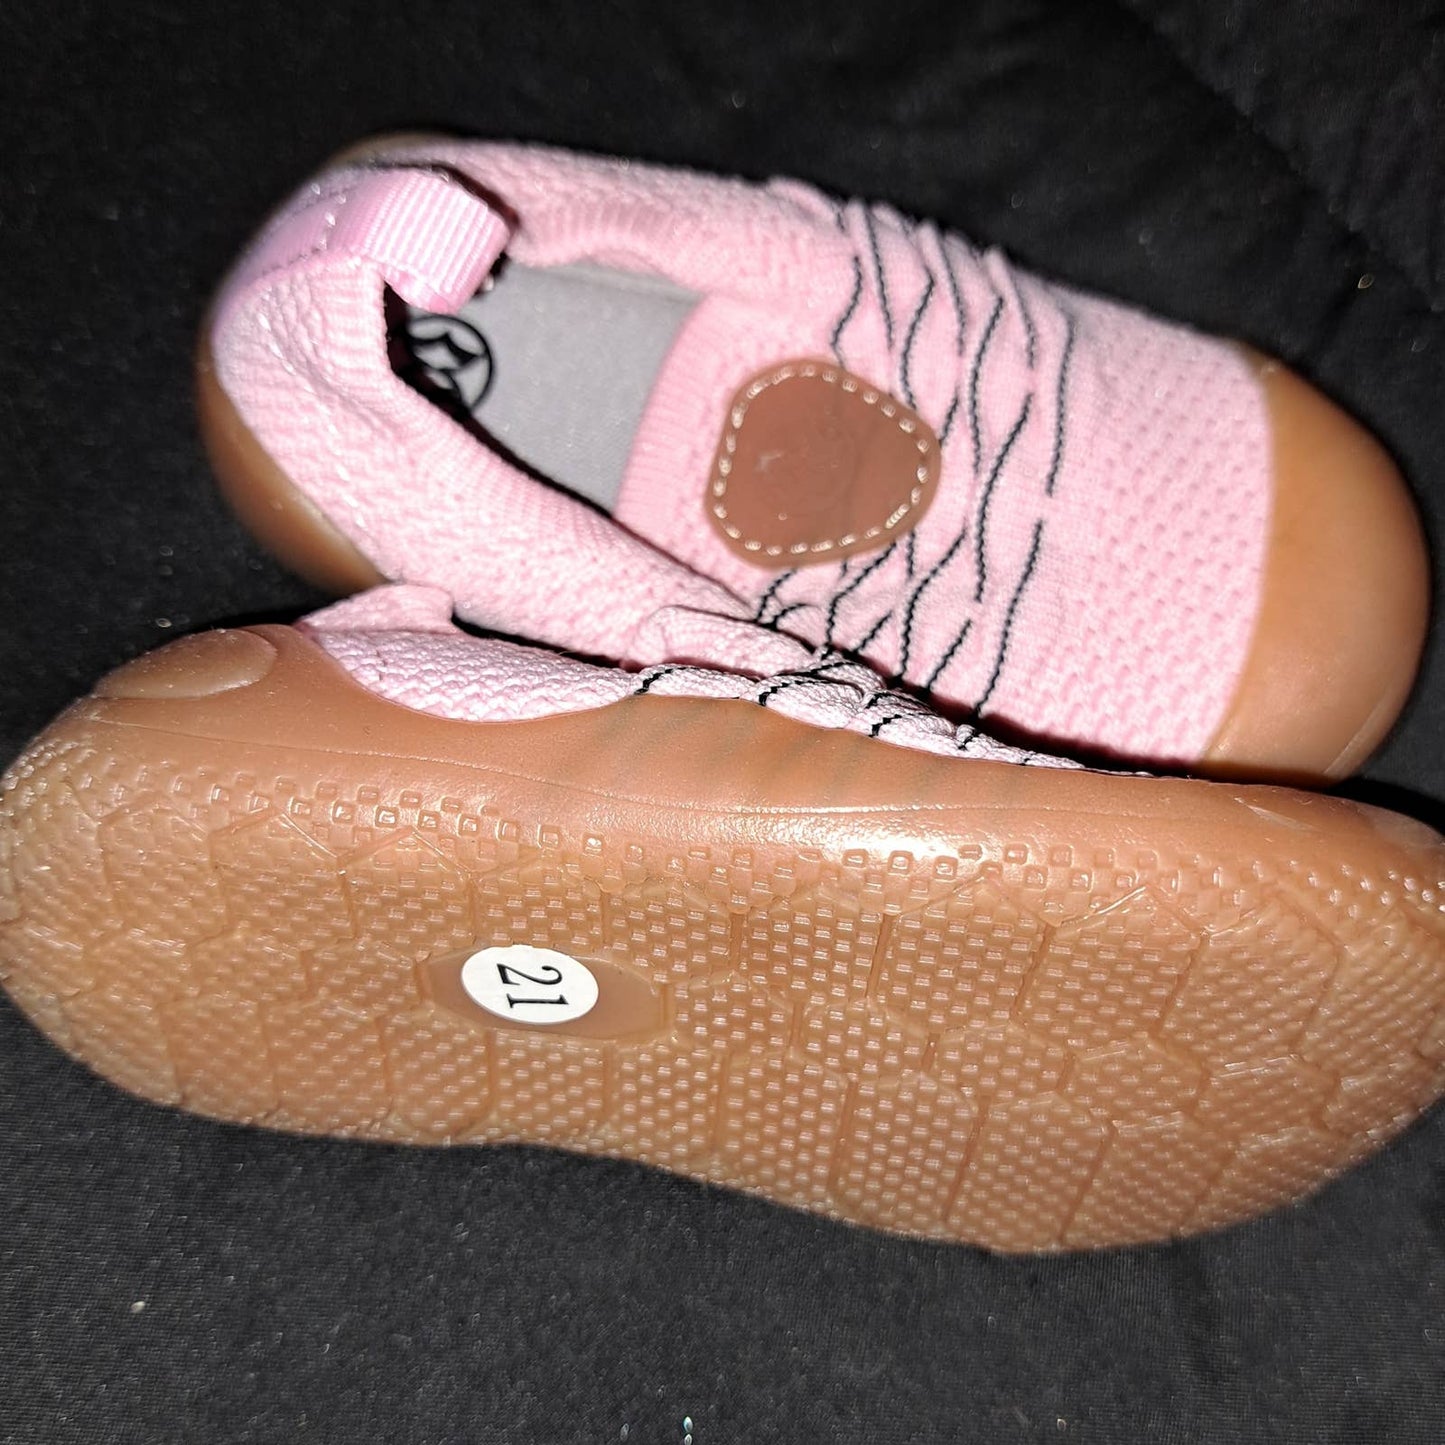 Gaatpot infant sz 21 EU -Sneaker - Sports Light Toddlers Shoes, Pink